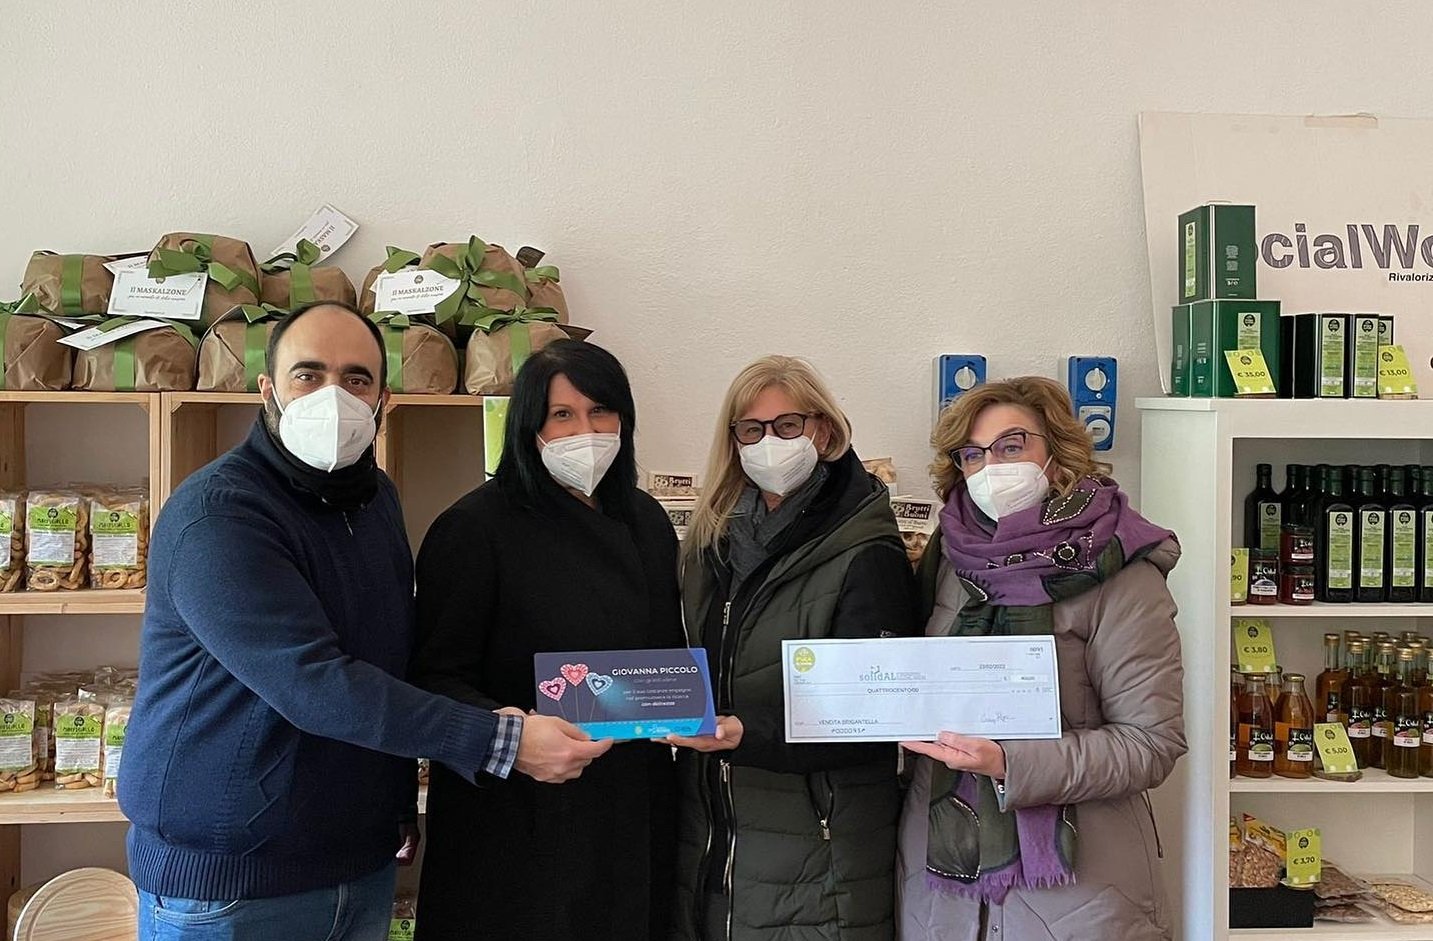 Grazie ai vasetti di crema “Brigantella” donati 400 euro a Solidal per la Ricerca